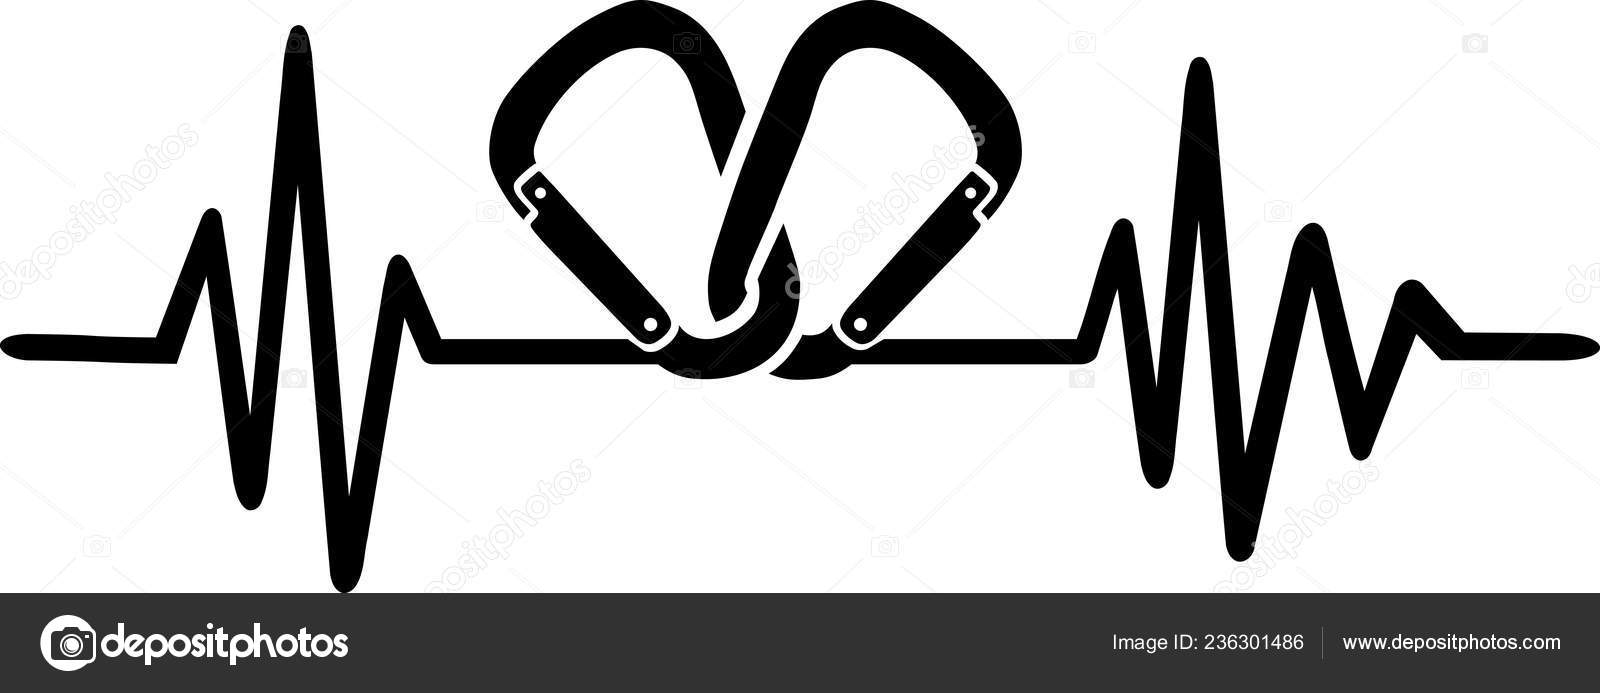 Cardiogram Sign Stock Illustrations – 31,059 Cardiogram Sign Stock  Illustrations, Vectors & Clipart - Dreamstime